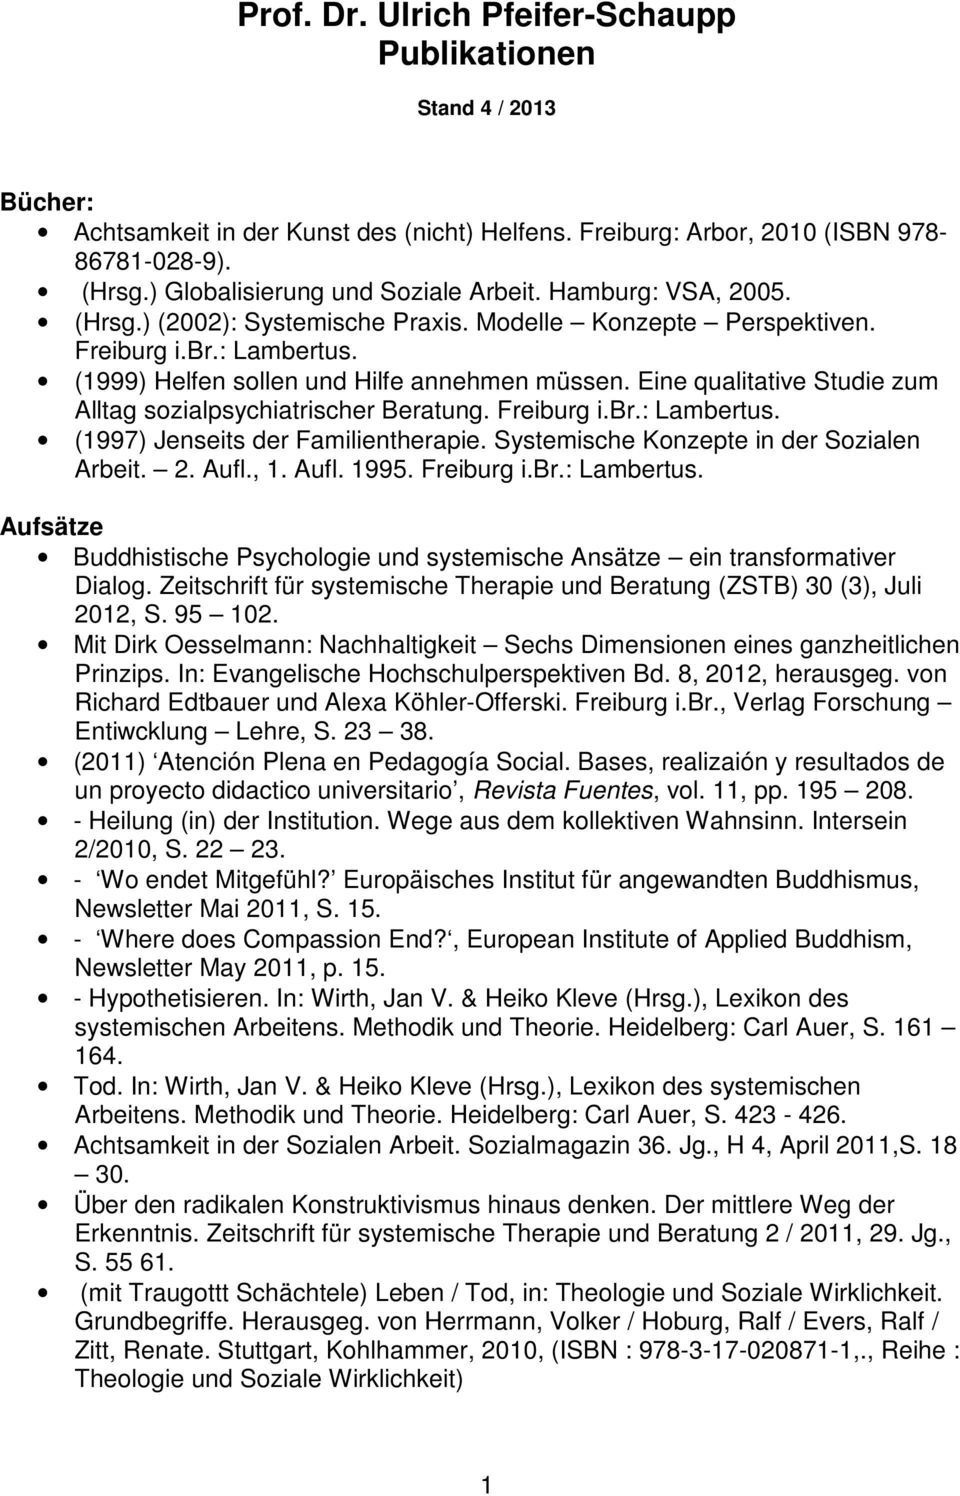 Eine qualitative Studie zum Alltag sozialpsychiatrischer Beratung. Freiburg i.br.: Lambertus. (1997) Jenseits der Familientherapie. Systemische Konzepte in der Sozialen Arbeit. 2. Aufl., 1. Aufl. 1995.